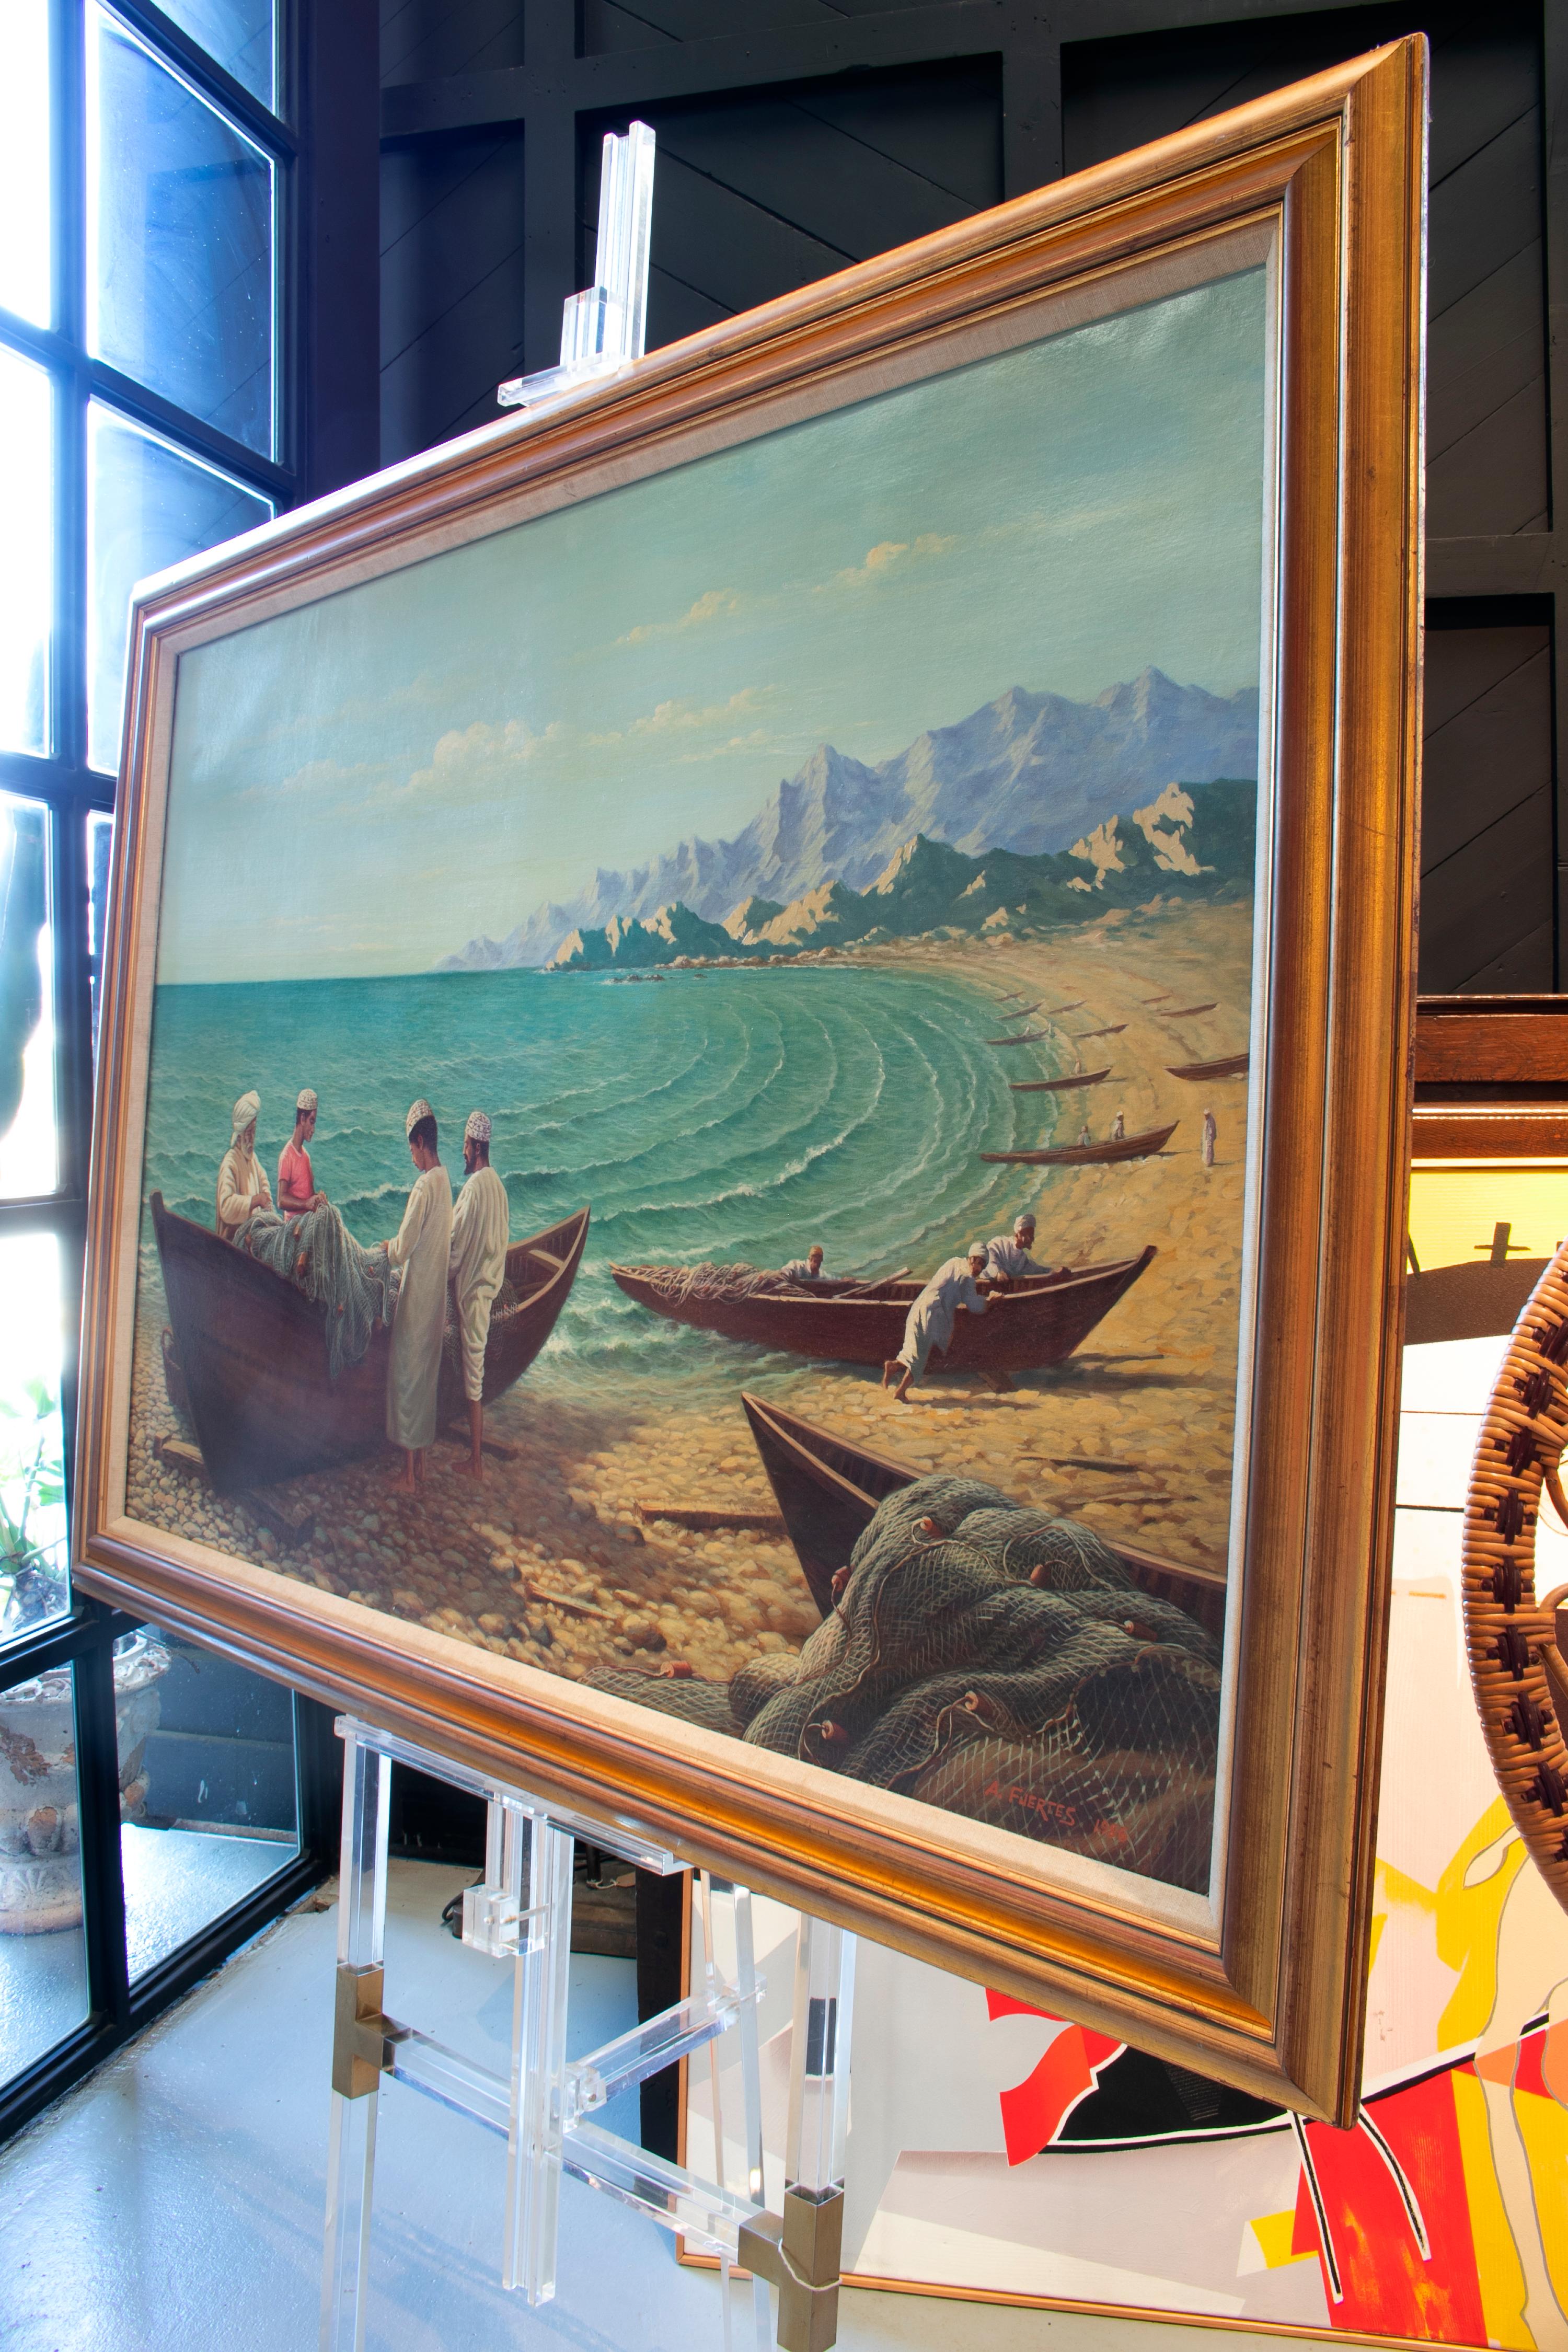 Antonio Fuertes 1986, peinture à l'huile sur toile représentant des pêcheurs marocains.